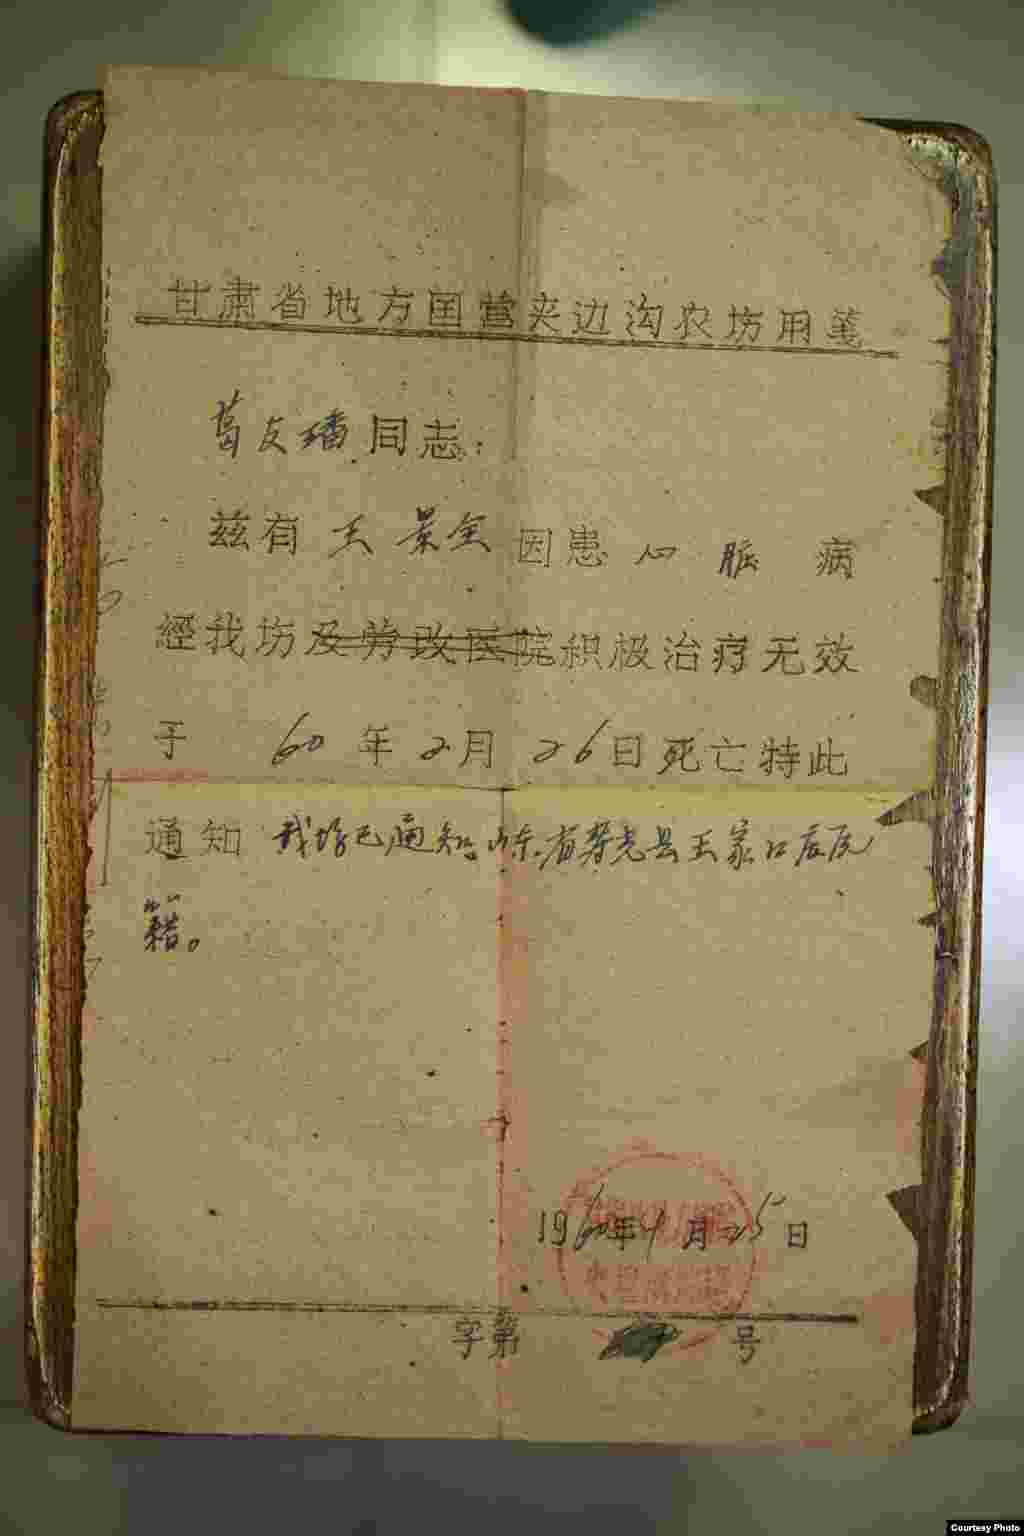 反右运动遇难者王景泉的死亡通知书(图片：艾晓明提供)